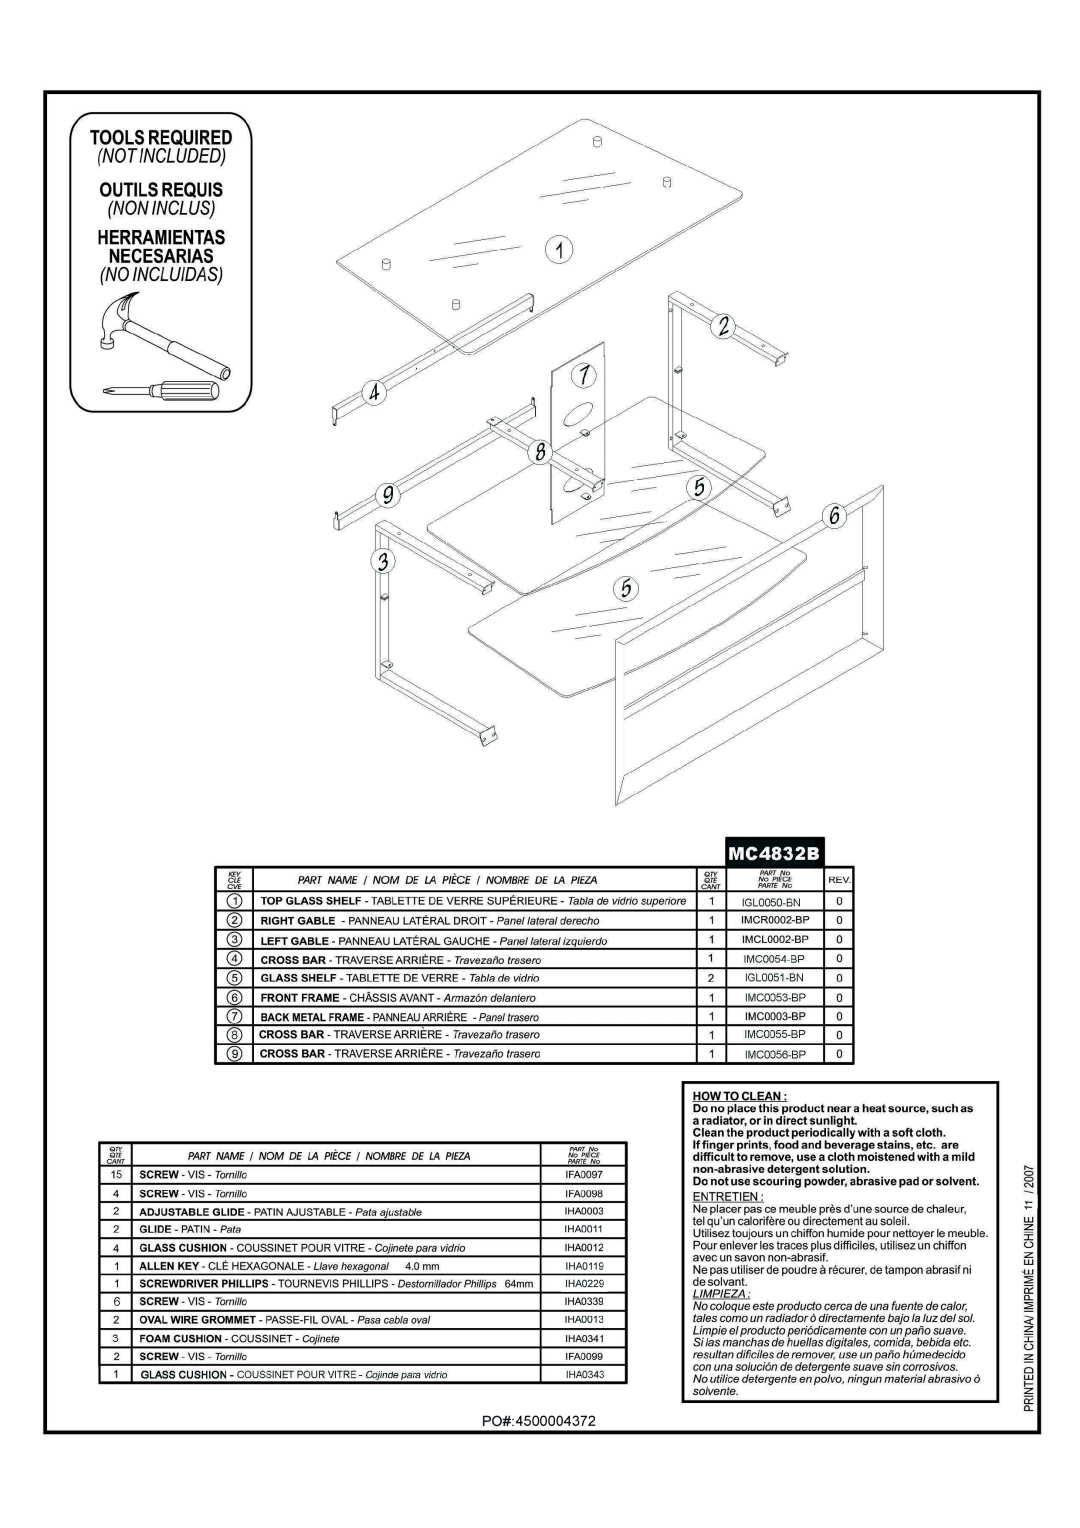 Tech Craft MC4832B manual 